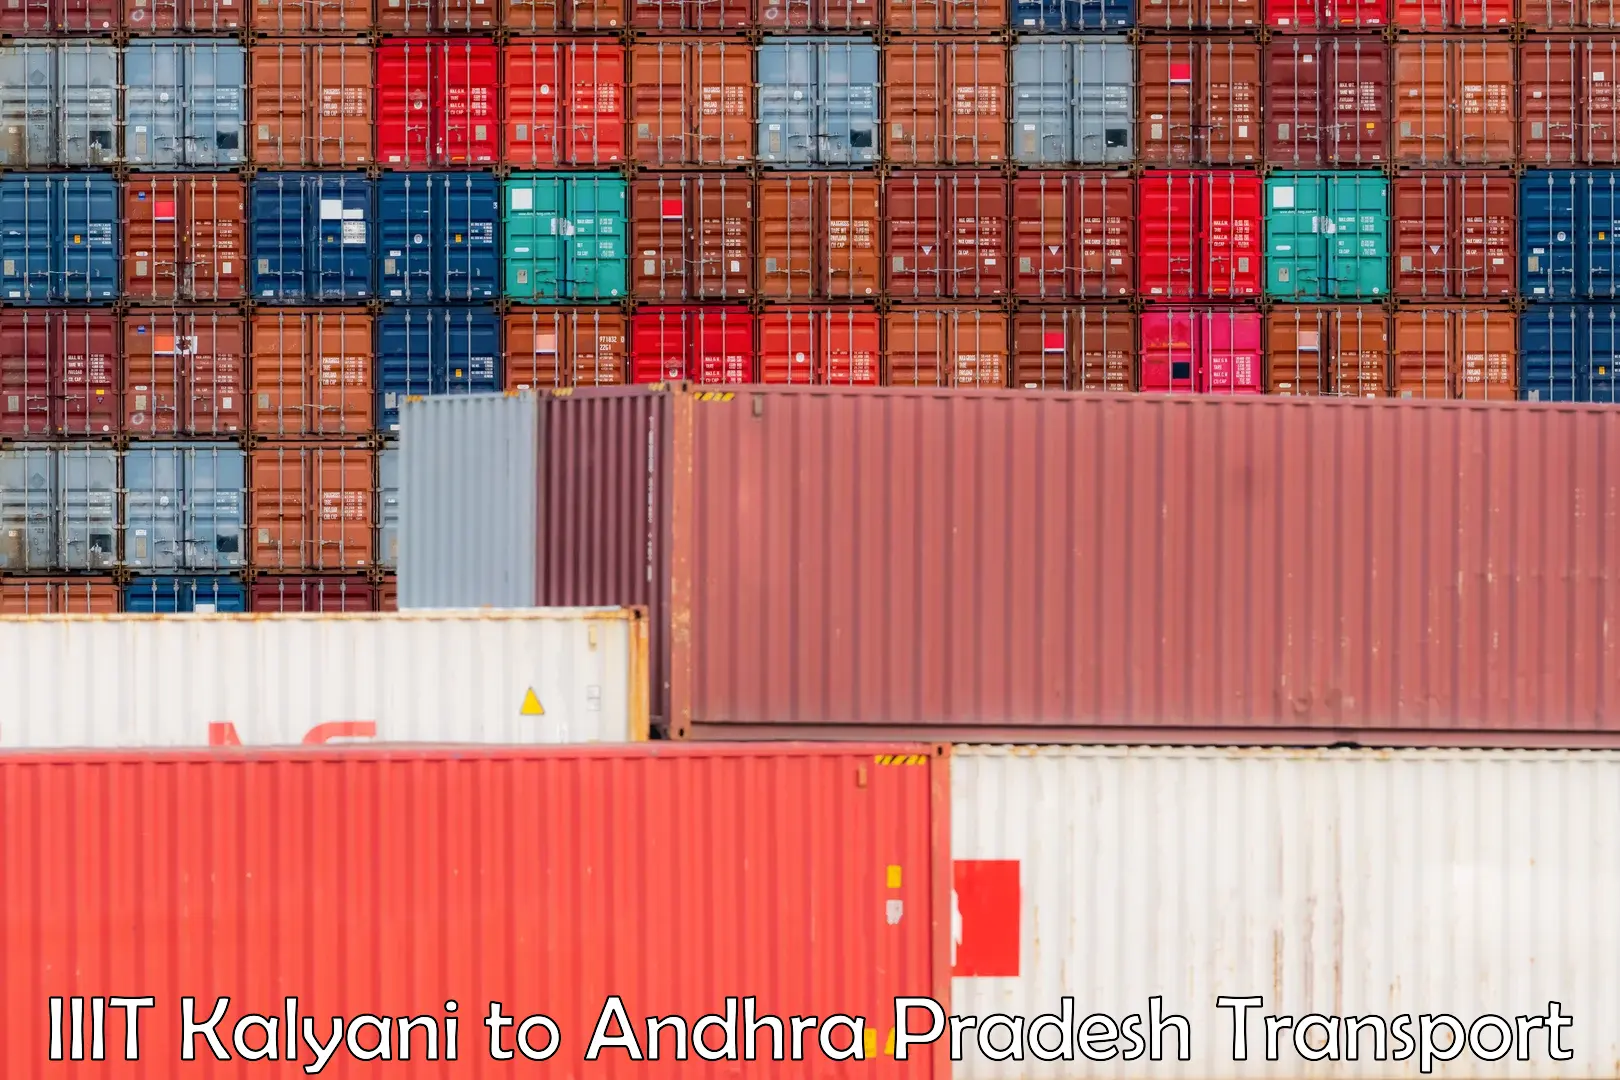 Container transport service IIIT Kalyani to Andhra Pradesh